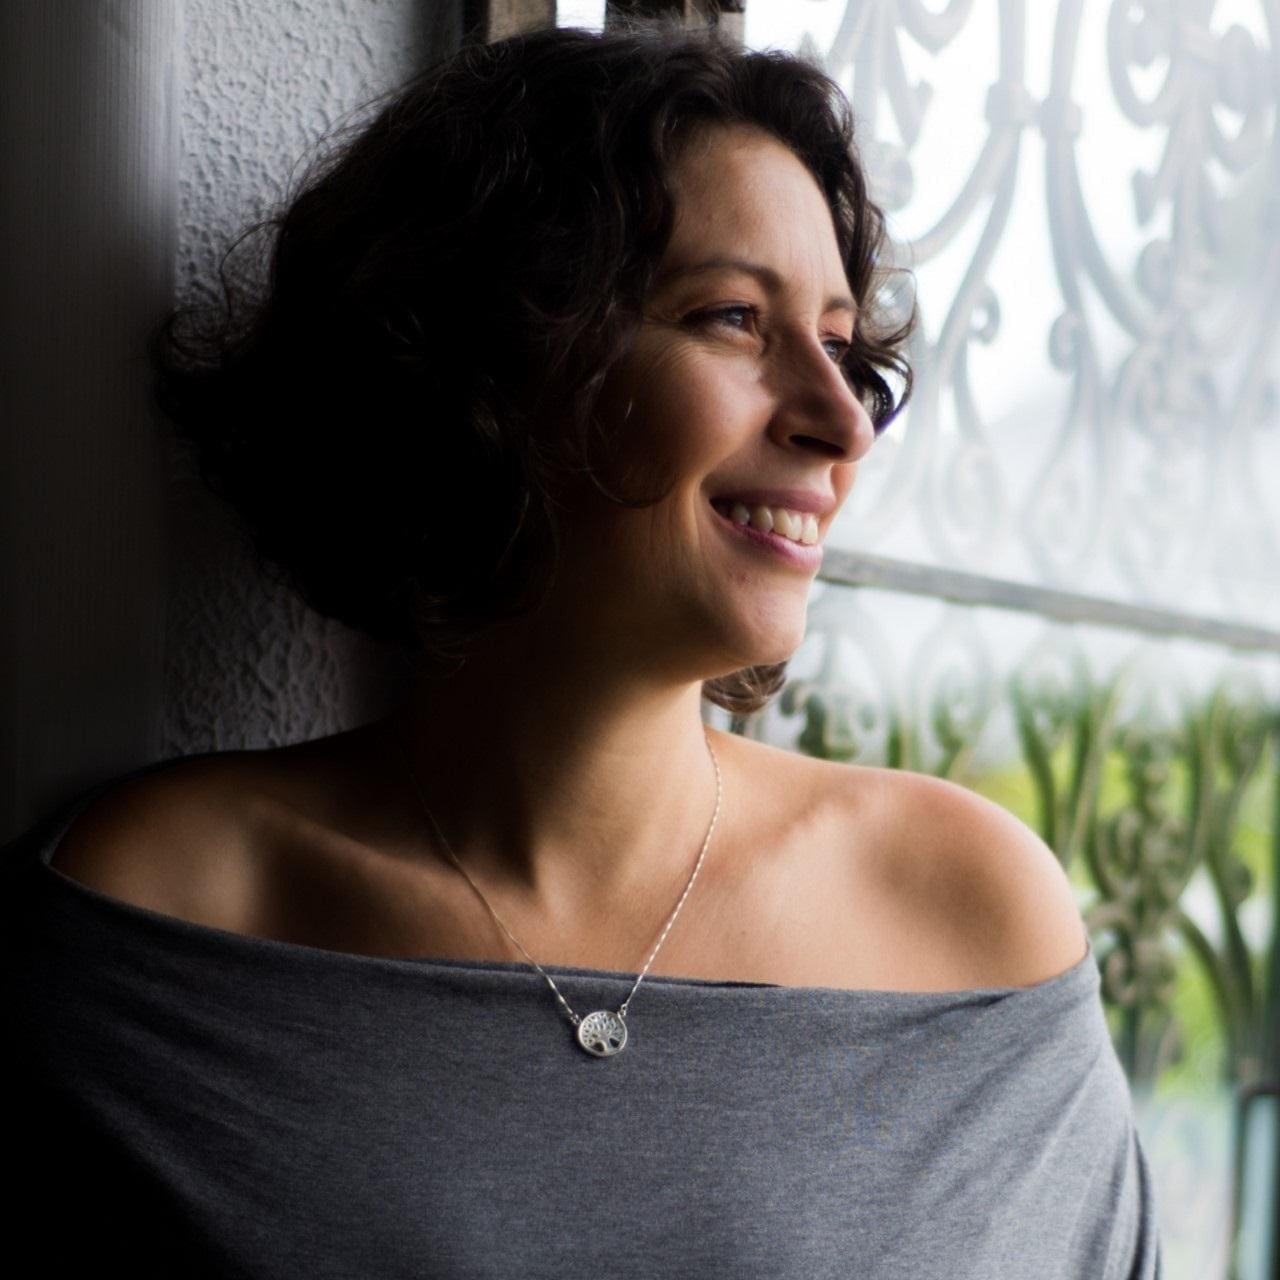 Maristela Lima: Escritora e especialista em Neurociências e Comportamento, com foco em Inteligência Emocional, ela é uma das precursoras da Comunicação Não-Violenta no Brasil, atuando com esta abordagem desde 2010